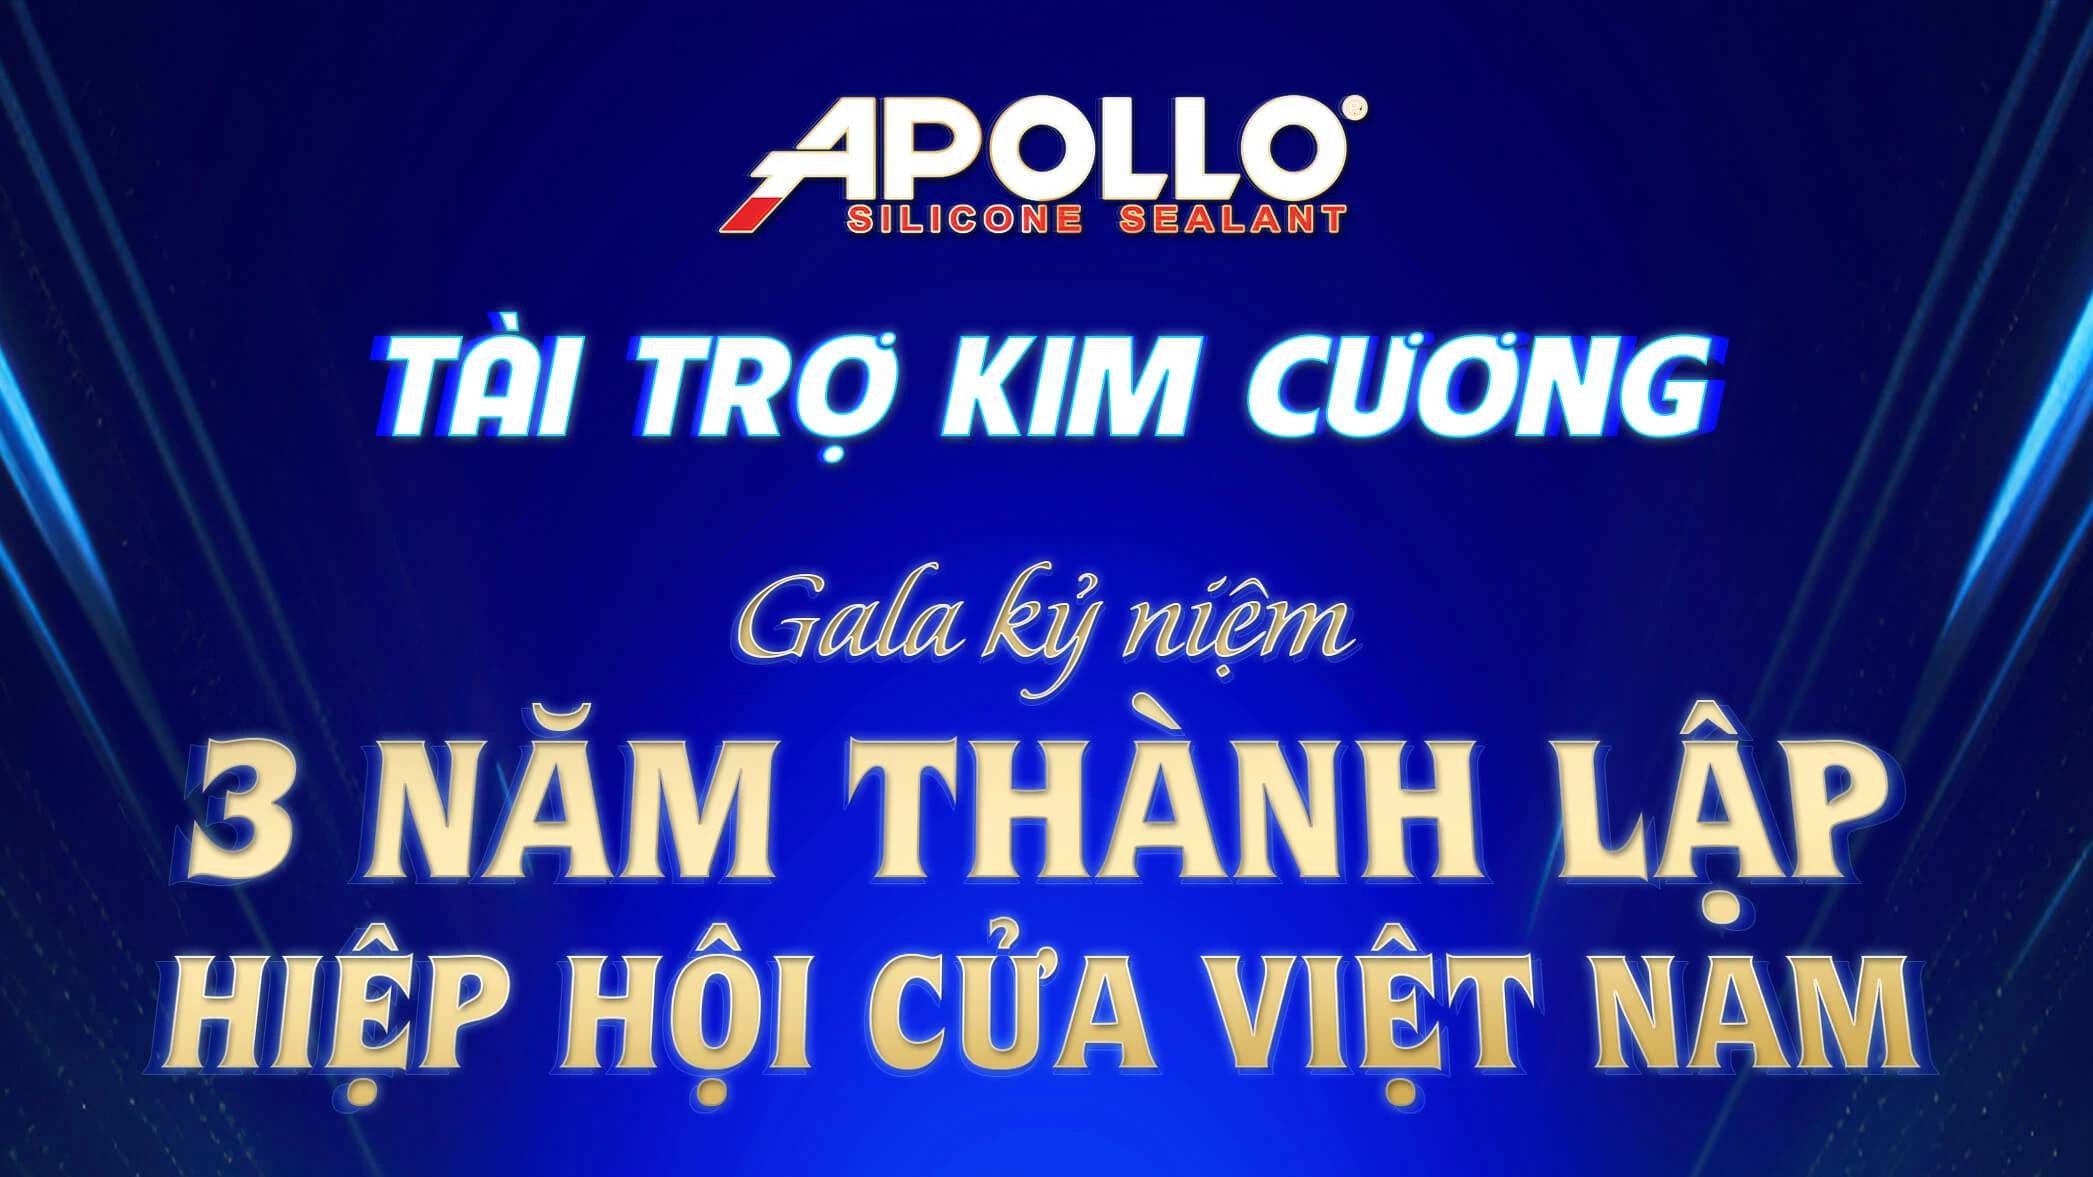 Apollo Silicone Chúc Mừng Và Tài Trợ Kim Cương Gala Lễ Kỷ Niệm 3 Năm Thành Lập Hiệp Hội Cửa Việt Nam